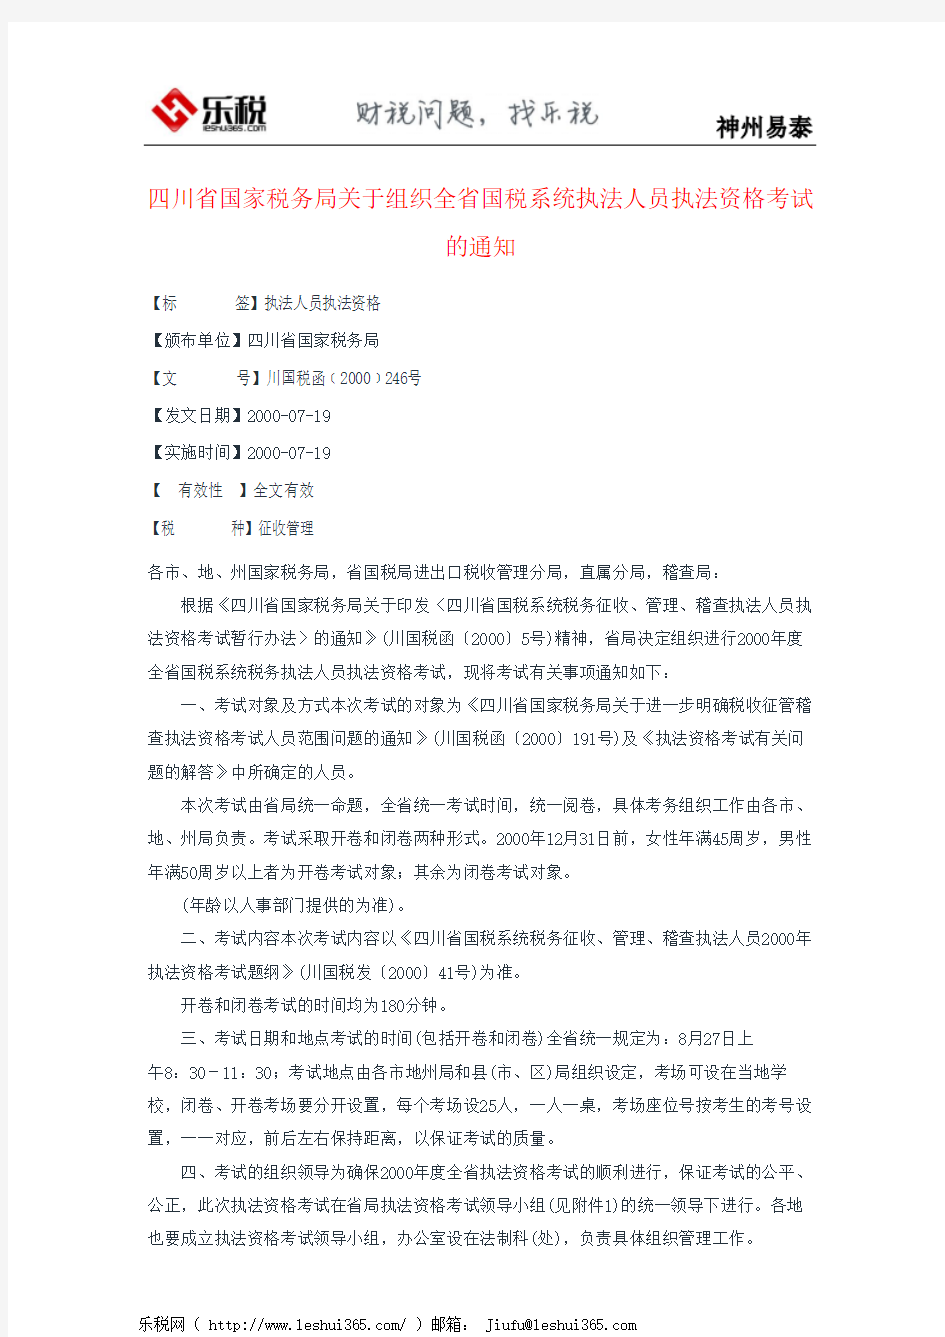 四川省国家税务局关于组织全省国税系统执法人员执法资格考试的通知